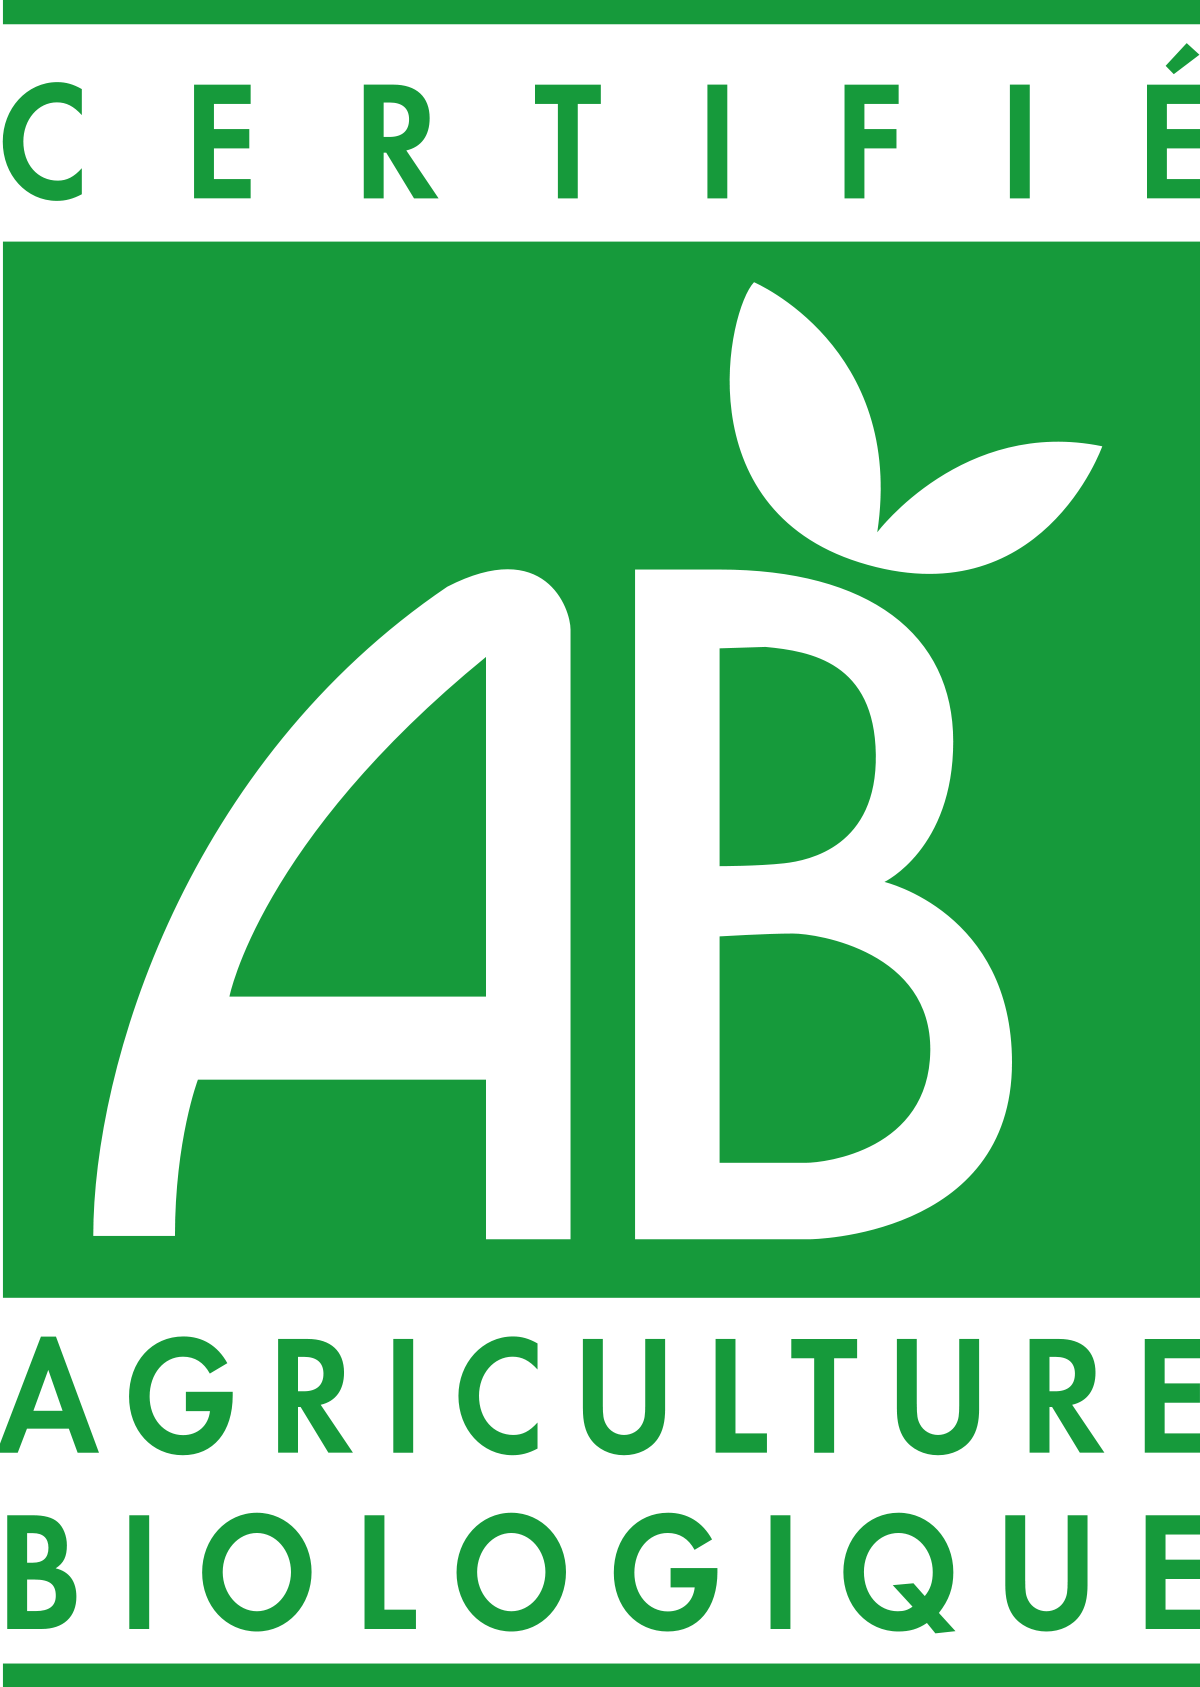 AB (agriculture Biologique)
L'appellation en français « agriculture biologique » est apparue vers 1950 comme équivalent de l'